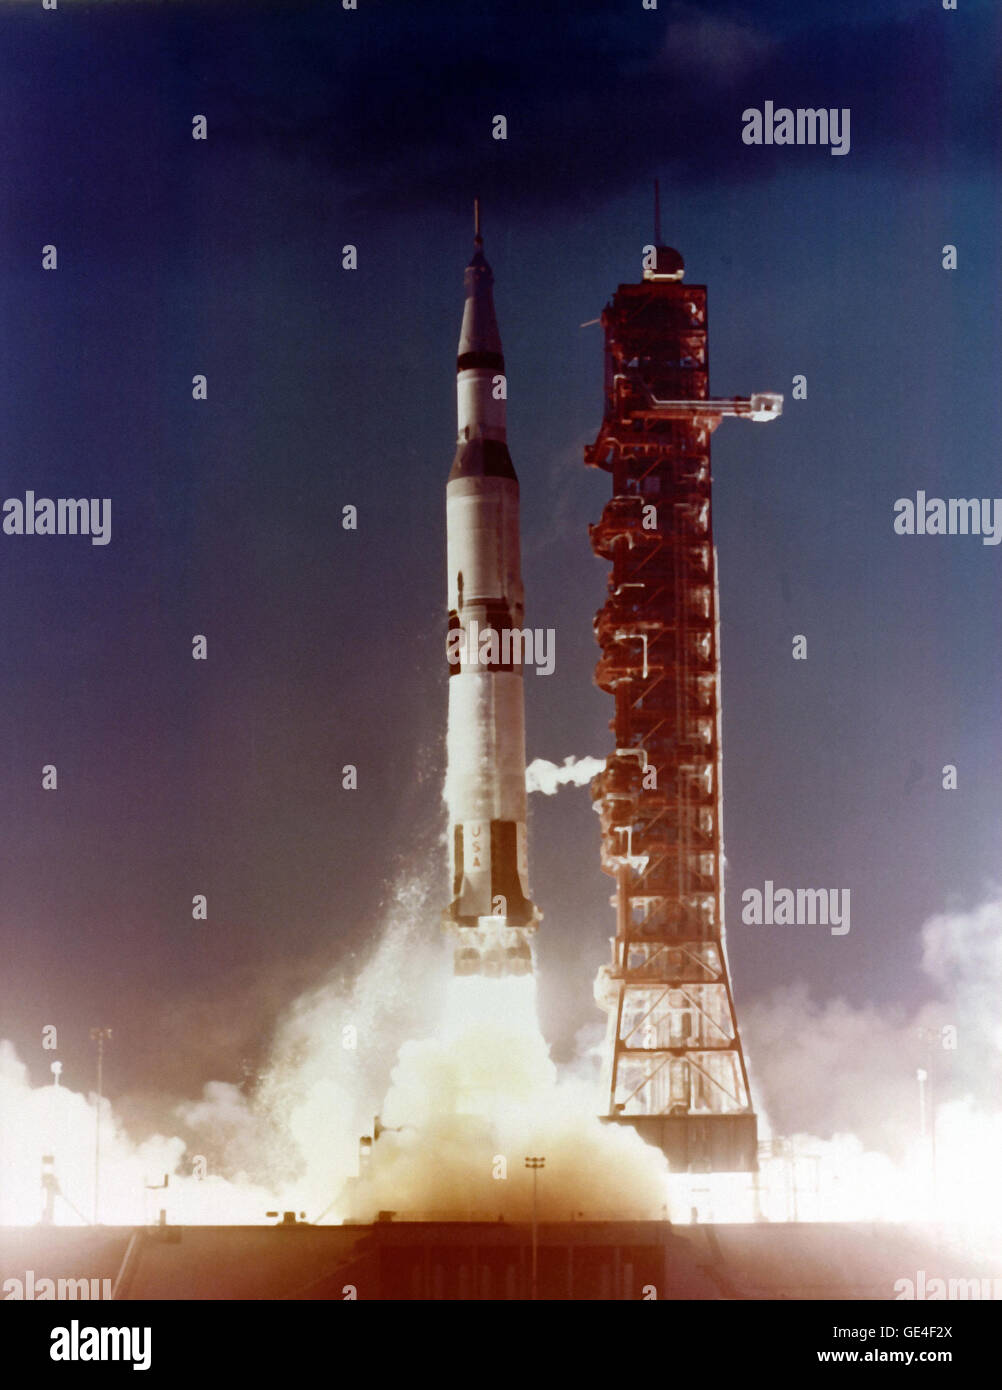 Am 9. November 1967 startete Apollo 4, der erste Testflug des Apollo/Saturn V-Raumfahrzeug, vom Kennedy Space Center Launch Komplex 39. Dies war ein unbemannter Testflug soll beweisen, dass die komplexen Saturn V-Rakete konnte seine Anforderungen durchzuführen. Alle drei Phasen getrennt erfolgreich und ihre Motoren durchgeführt wie geplant. Die dritte Stufe neu auch im Orbit, die Voraussetzung für Mondmissionen wurde gestartet. Am Ende des Fluges das unbemannte Apollo-Raumschiff neu eingegeben und bewiesen, dass es die intensive Hitze, die während einer High-Speed-Rückkehr vom Mond erzeugte überleben konnte. Stockfoto